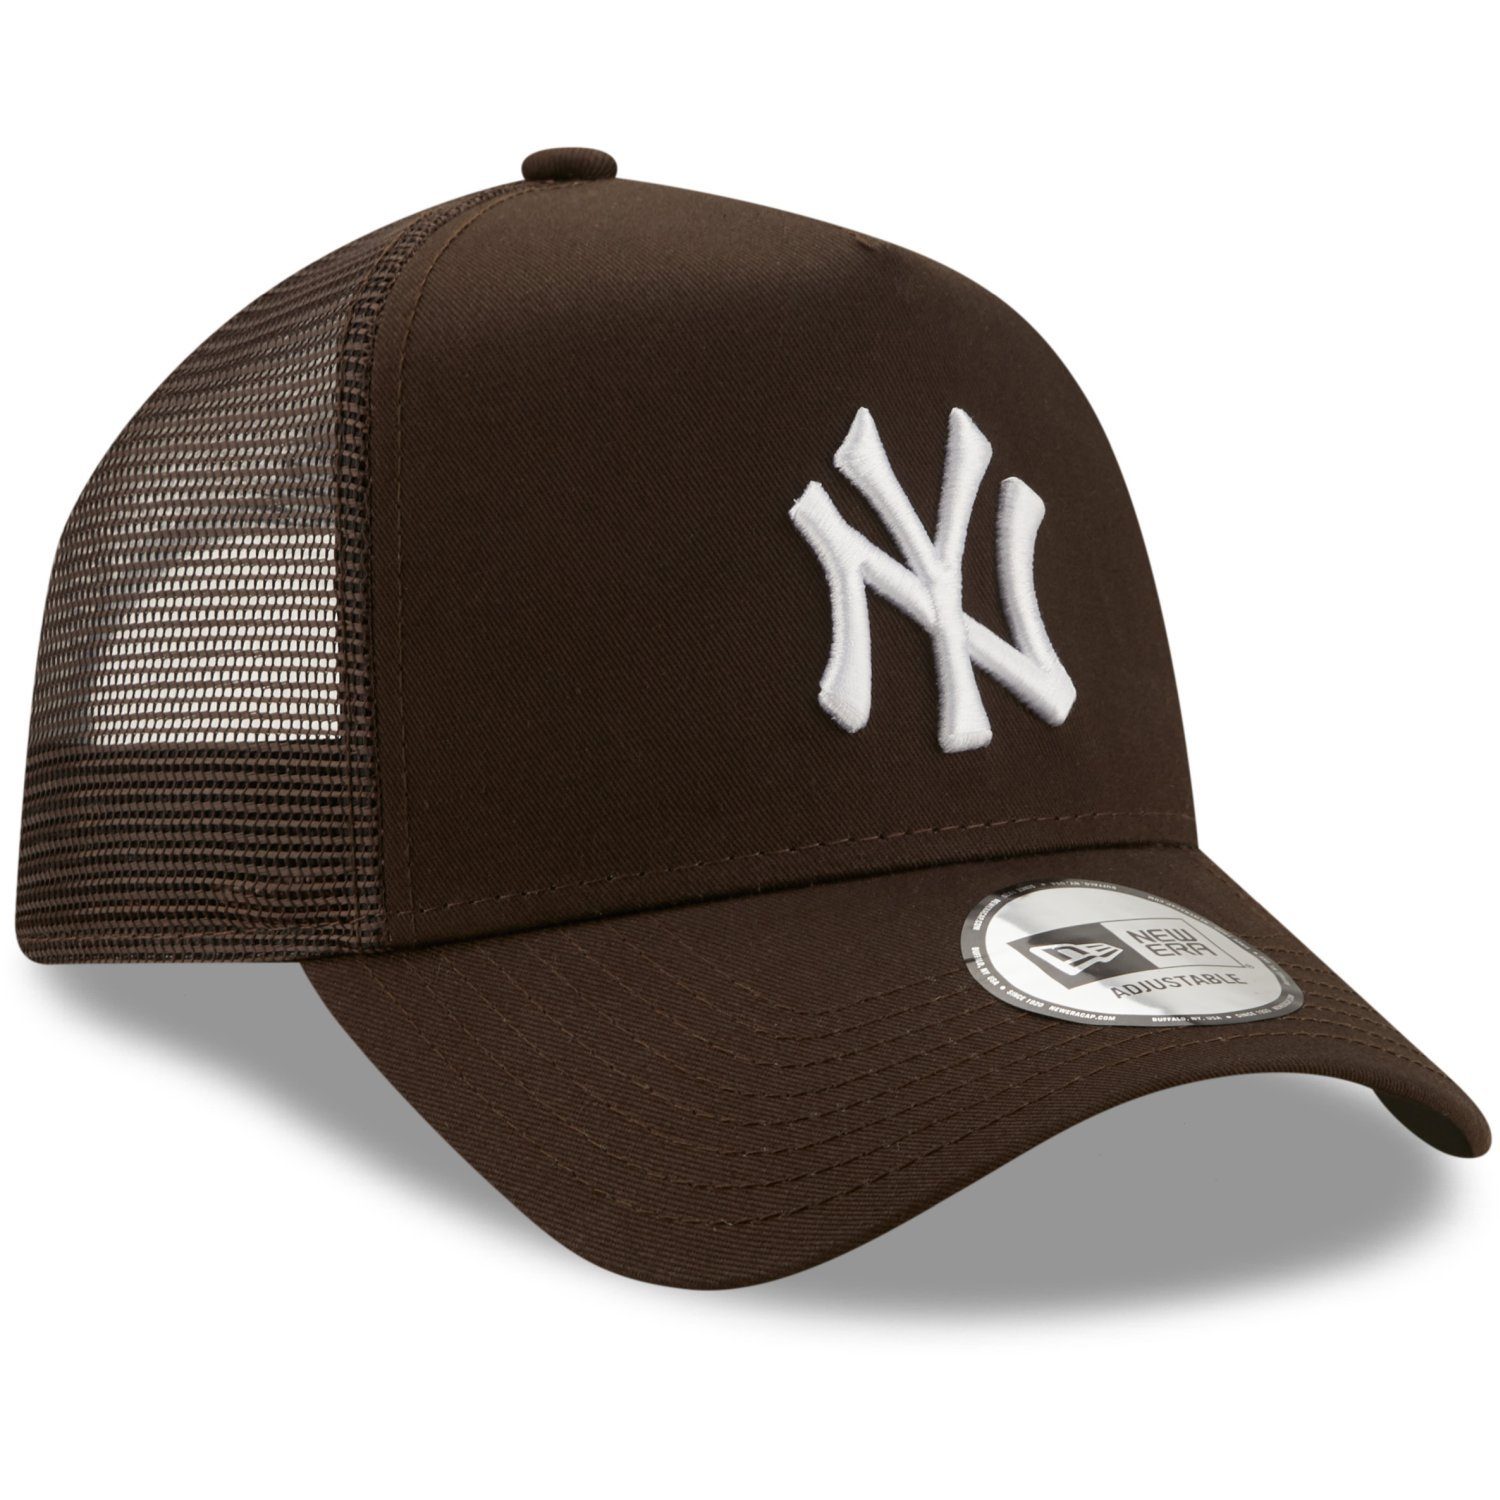 Yankees York AFrame Trucker New Era New Trucker Cap